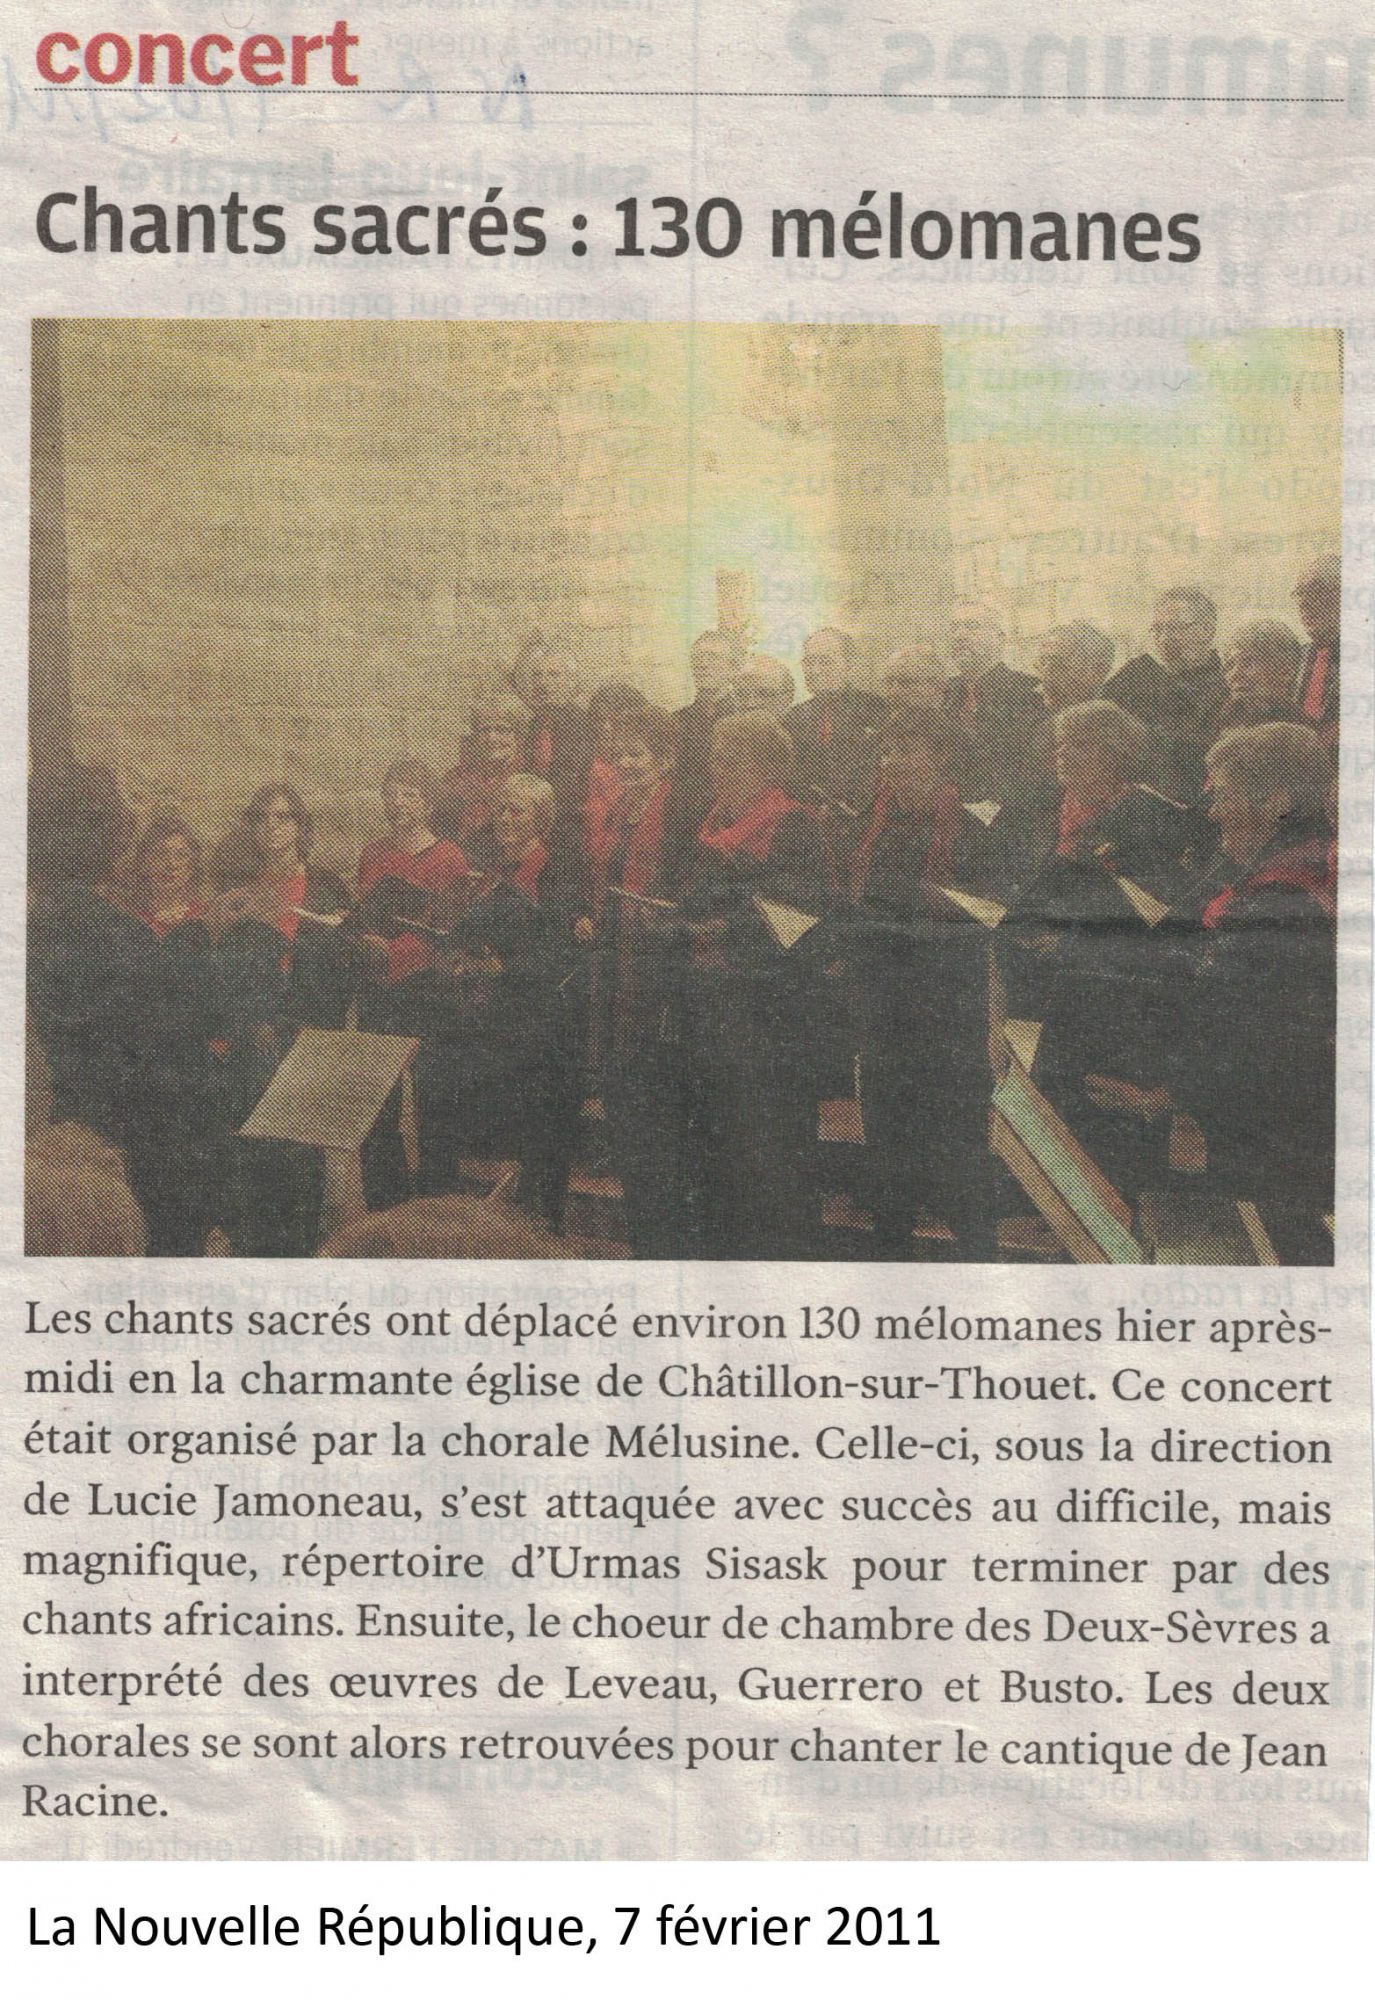 Concert Chatillon sur Thouet 2011 c